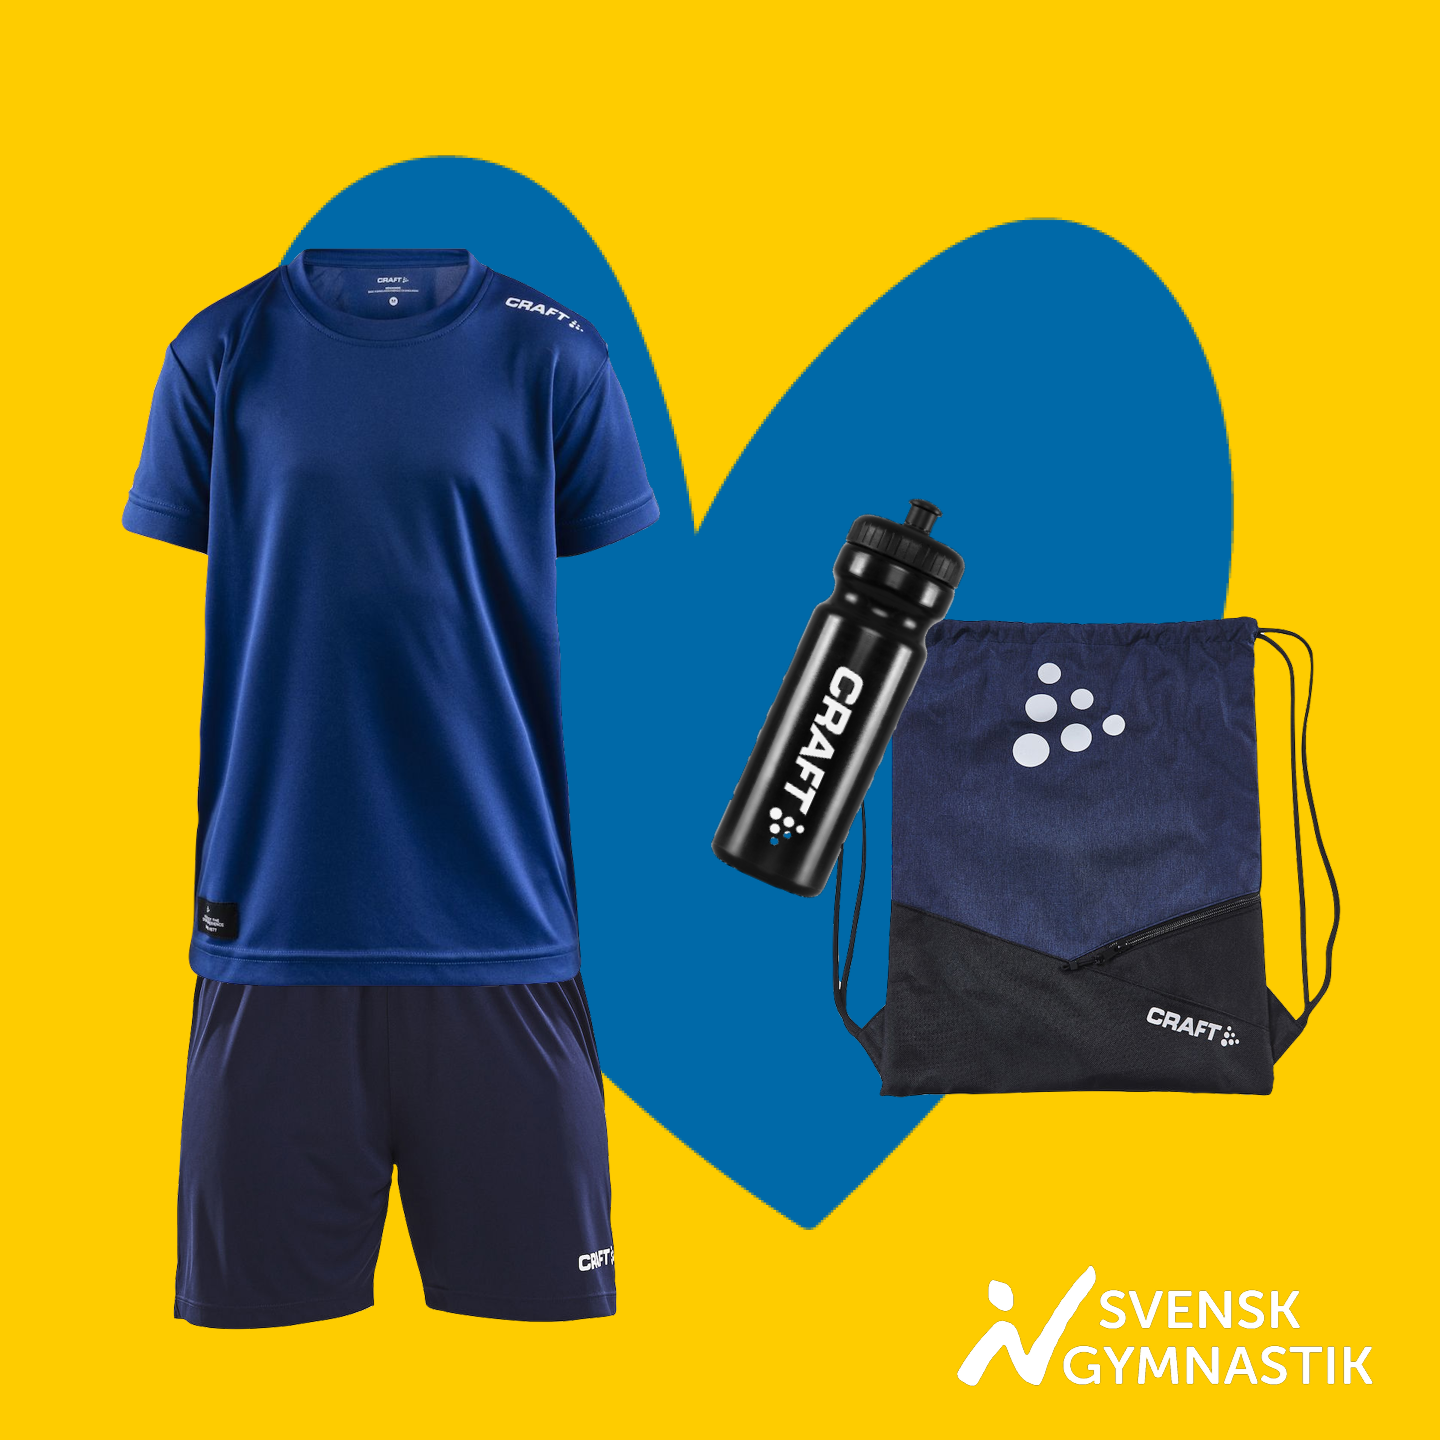 Gul bakgrund med blått hjärta, produkter: träningskläder, vattenflaska och gymnastikpåse. Blå ram med bildtext: Klicka för att beställa